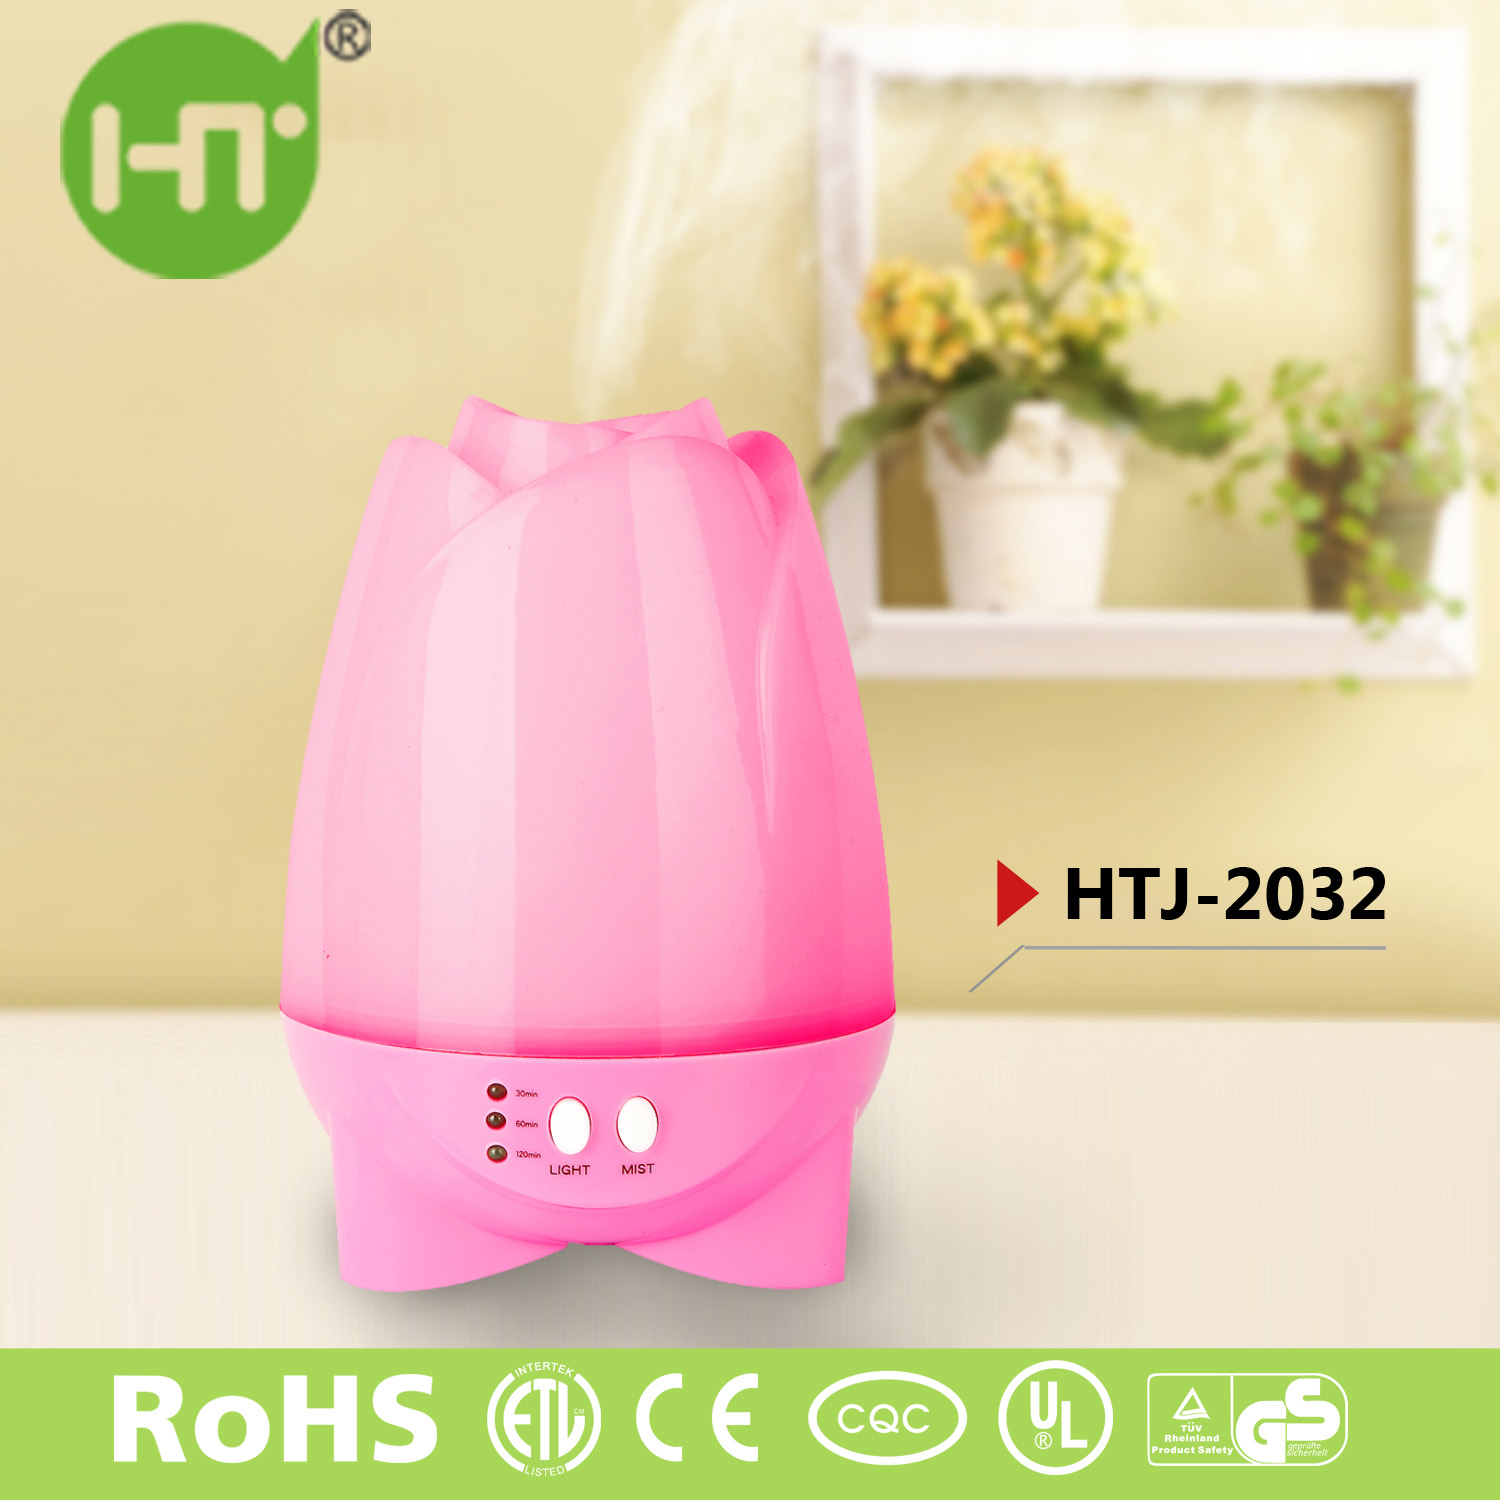 HTJ-2032 Mini Aromatherapy Ultrasonic Aroma Essential Oil Diffuser